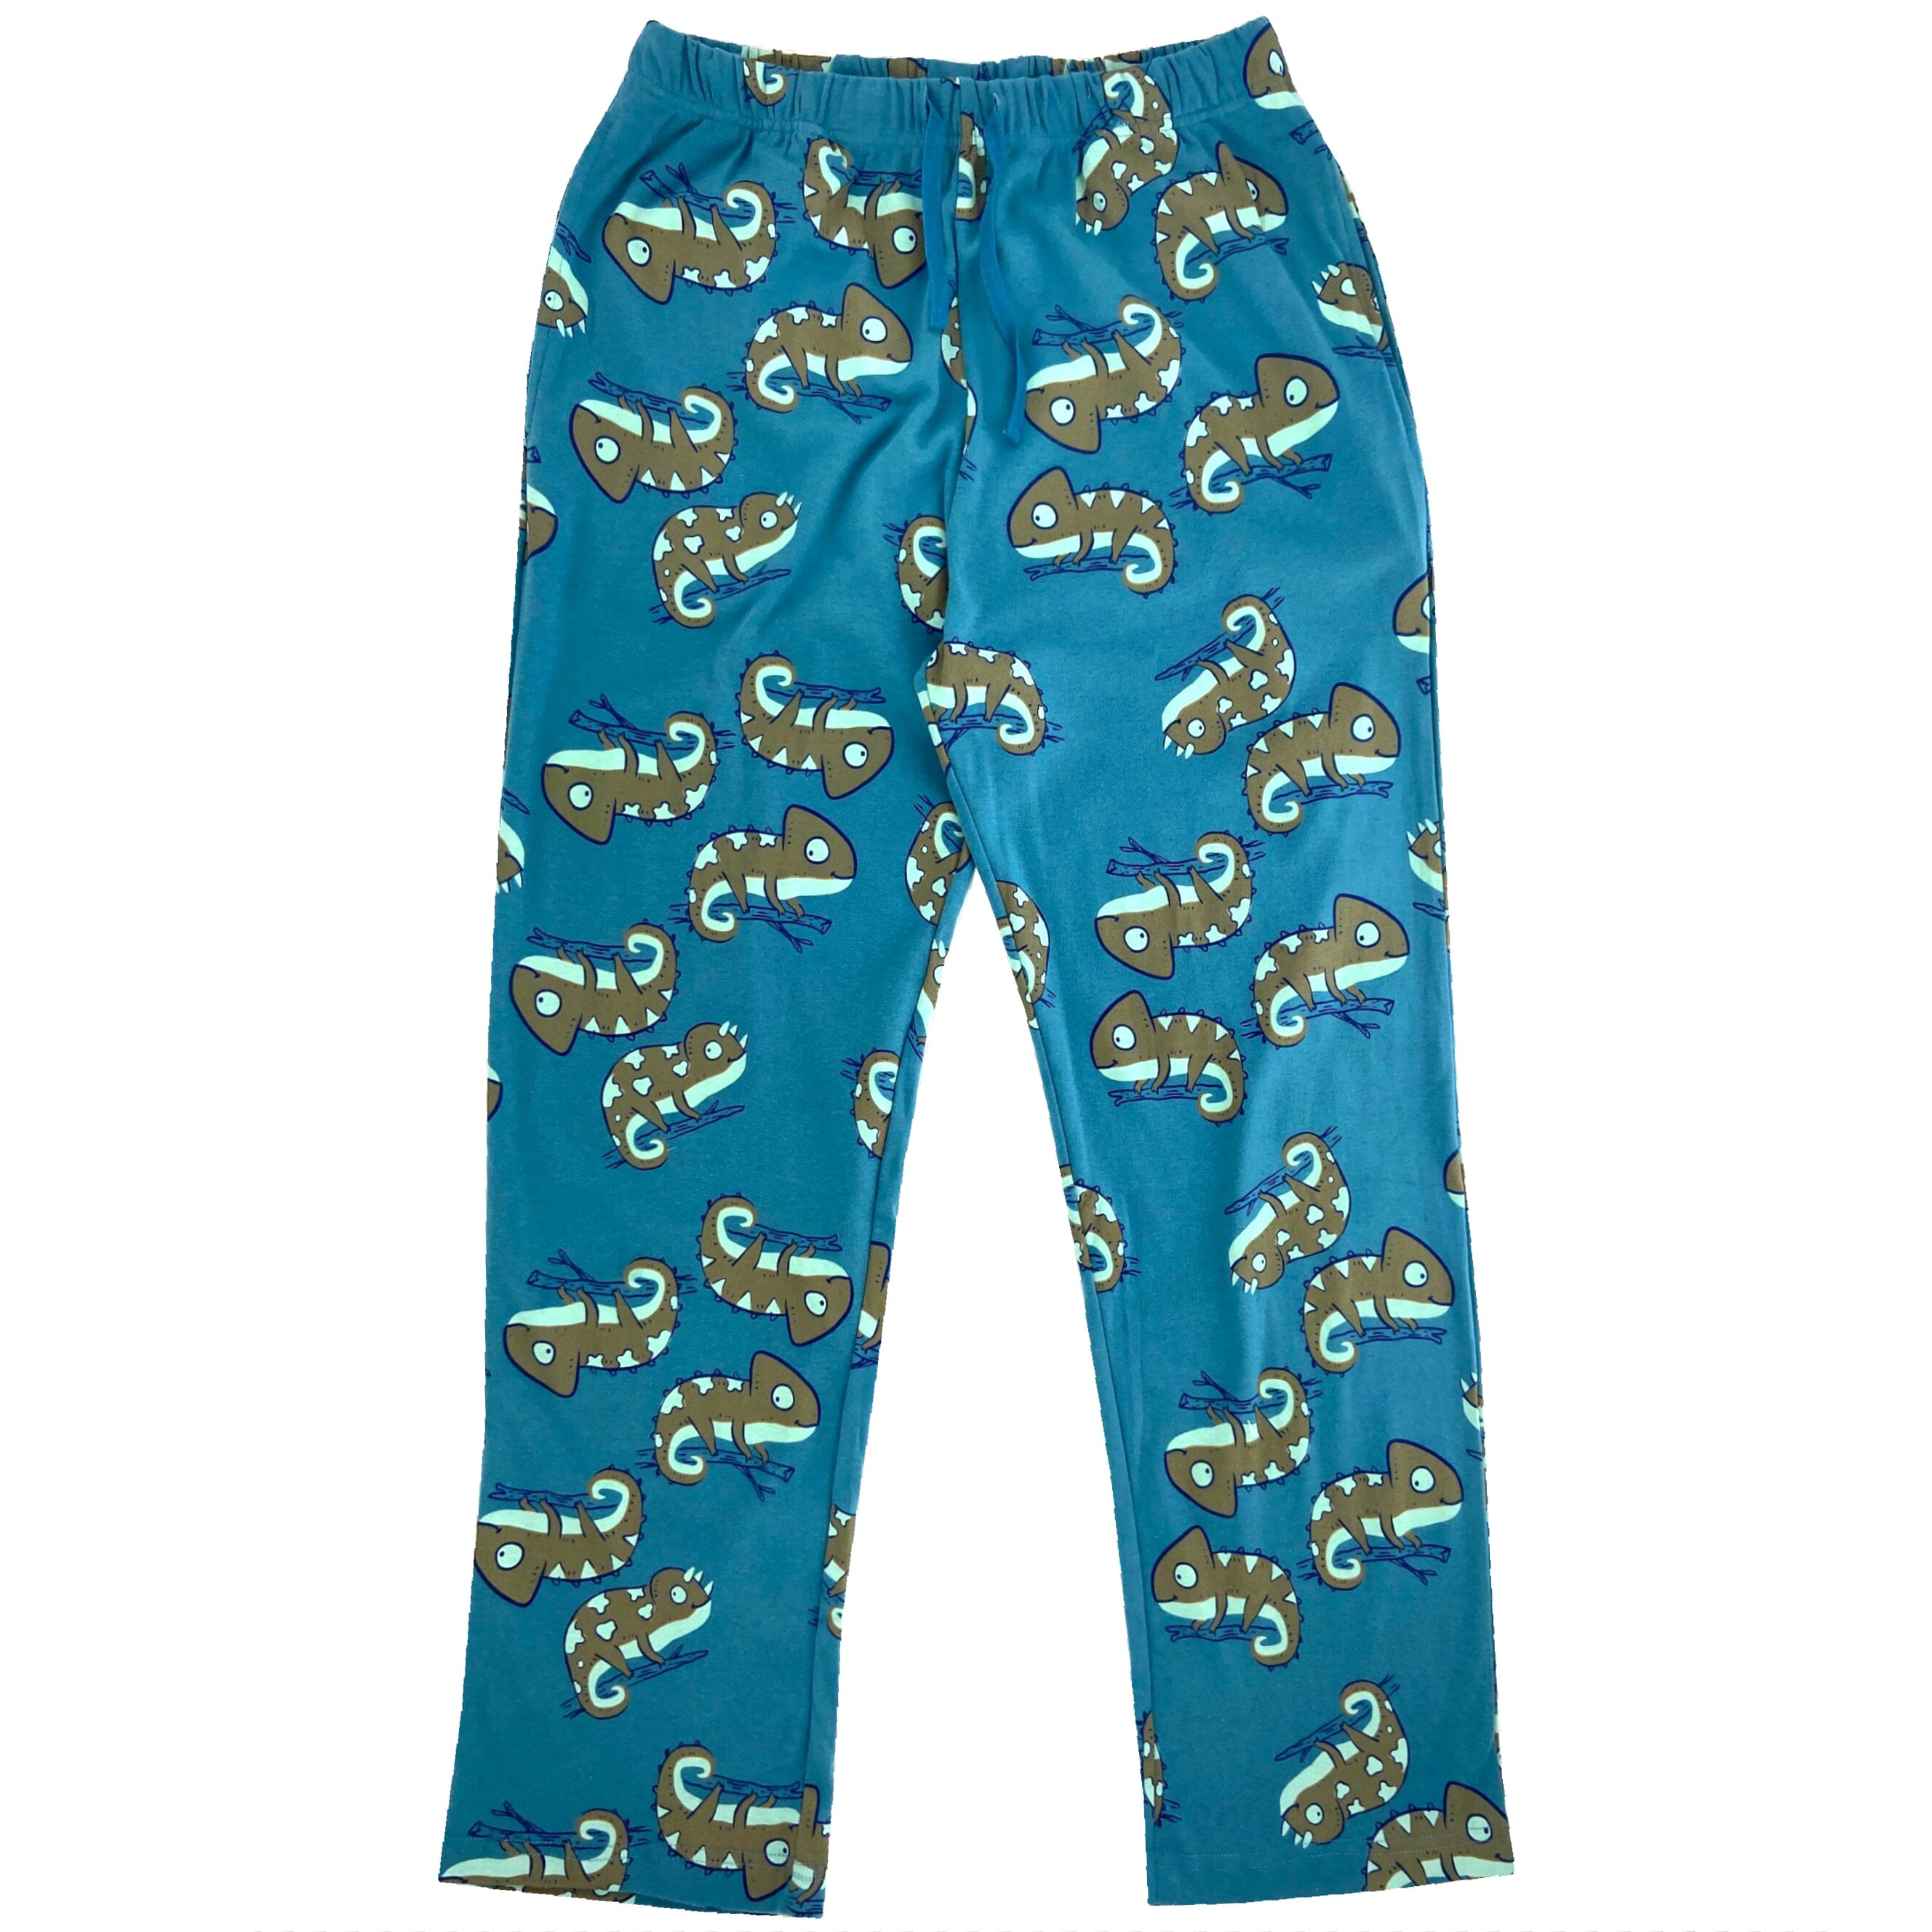 Men's Chameleon Iguana Novelty Print Cotton Knit Long Pajama PJ Pants